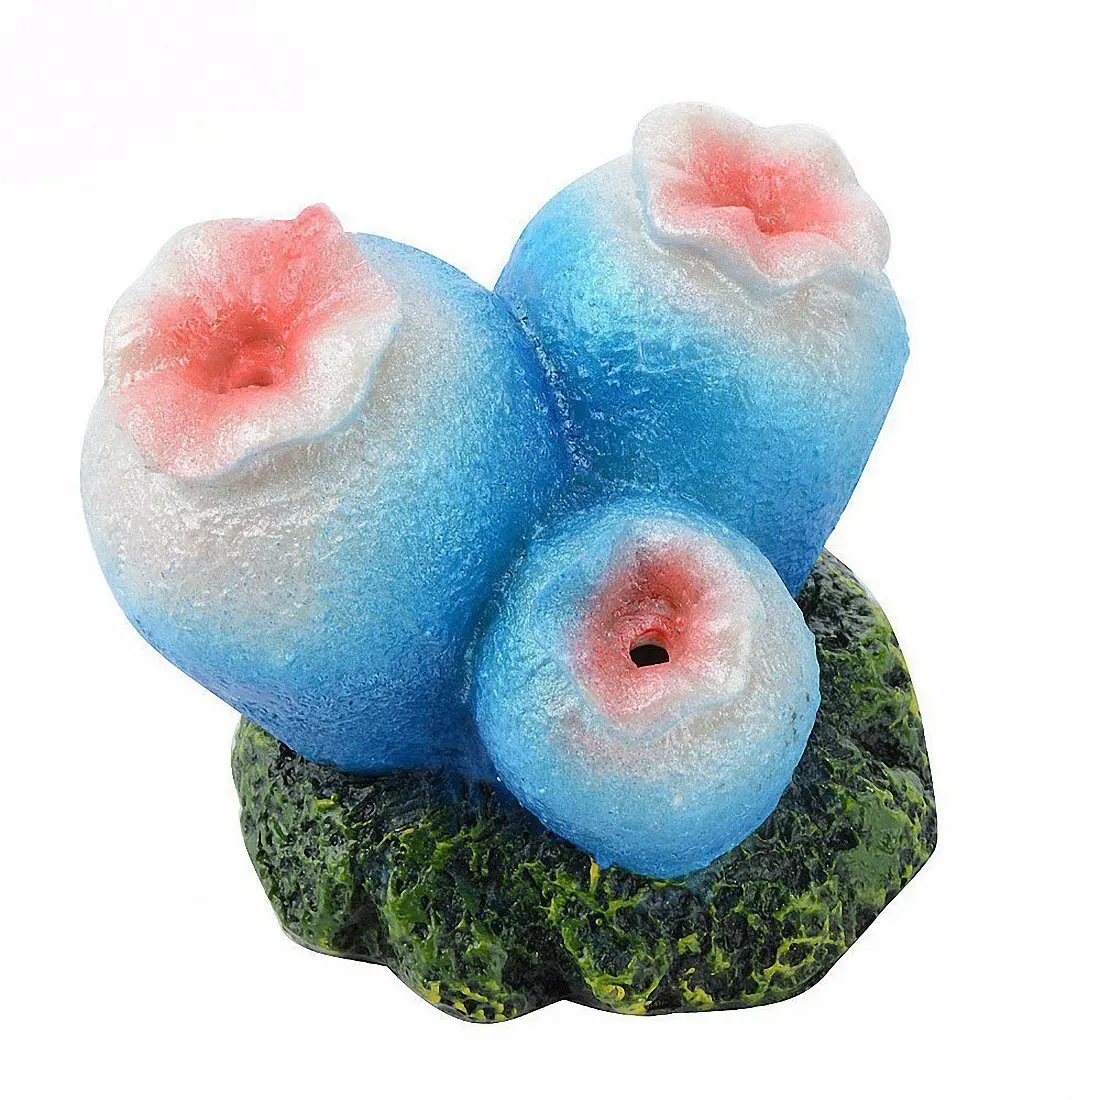 Coral 6. Кораллы для аквариума. Кислородный камень. Коралл силиконовый на керамической основе, синий, 4.5х4.5х4см (rt172sb). Декор для аквариума Zolux агат стеклянный s Мульти цвет 430 гр.